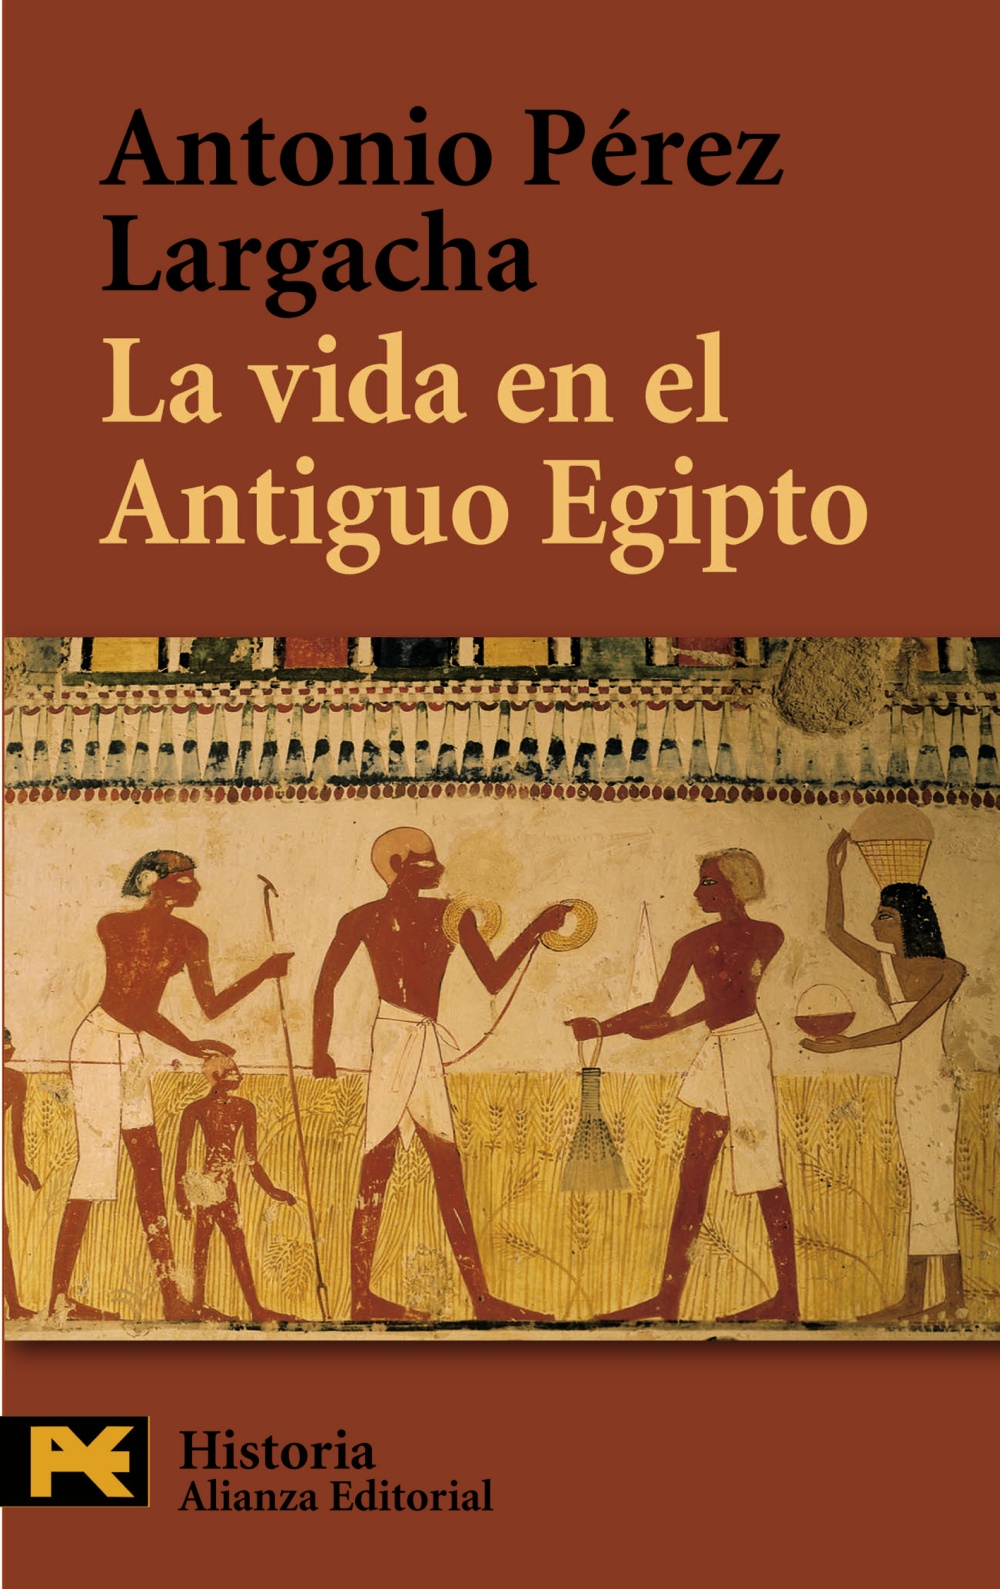 mareado Salón de clases salida La vida en el Antiguo Egipto - Hablamos de Libros